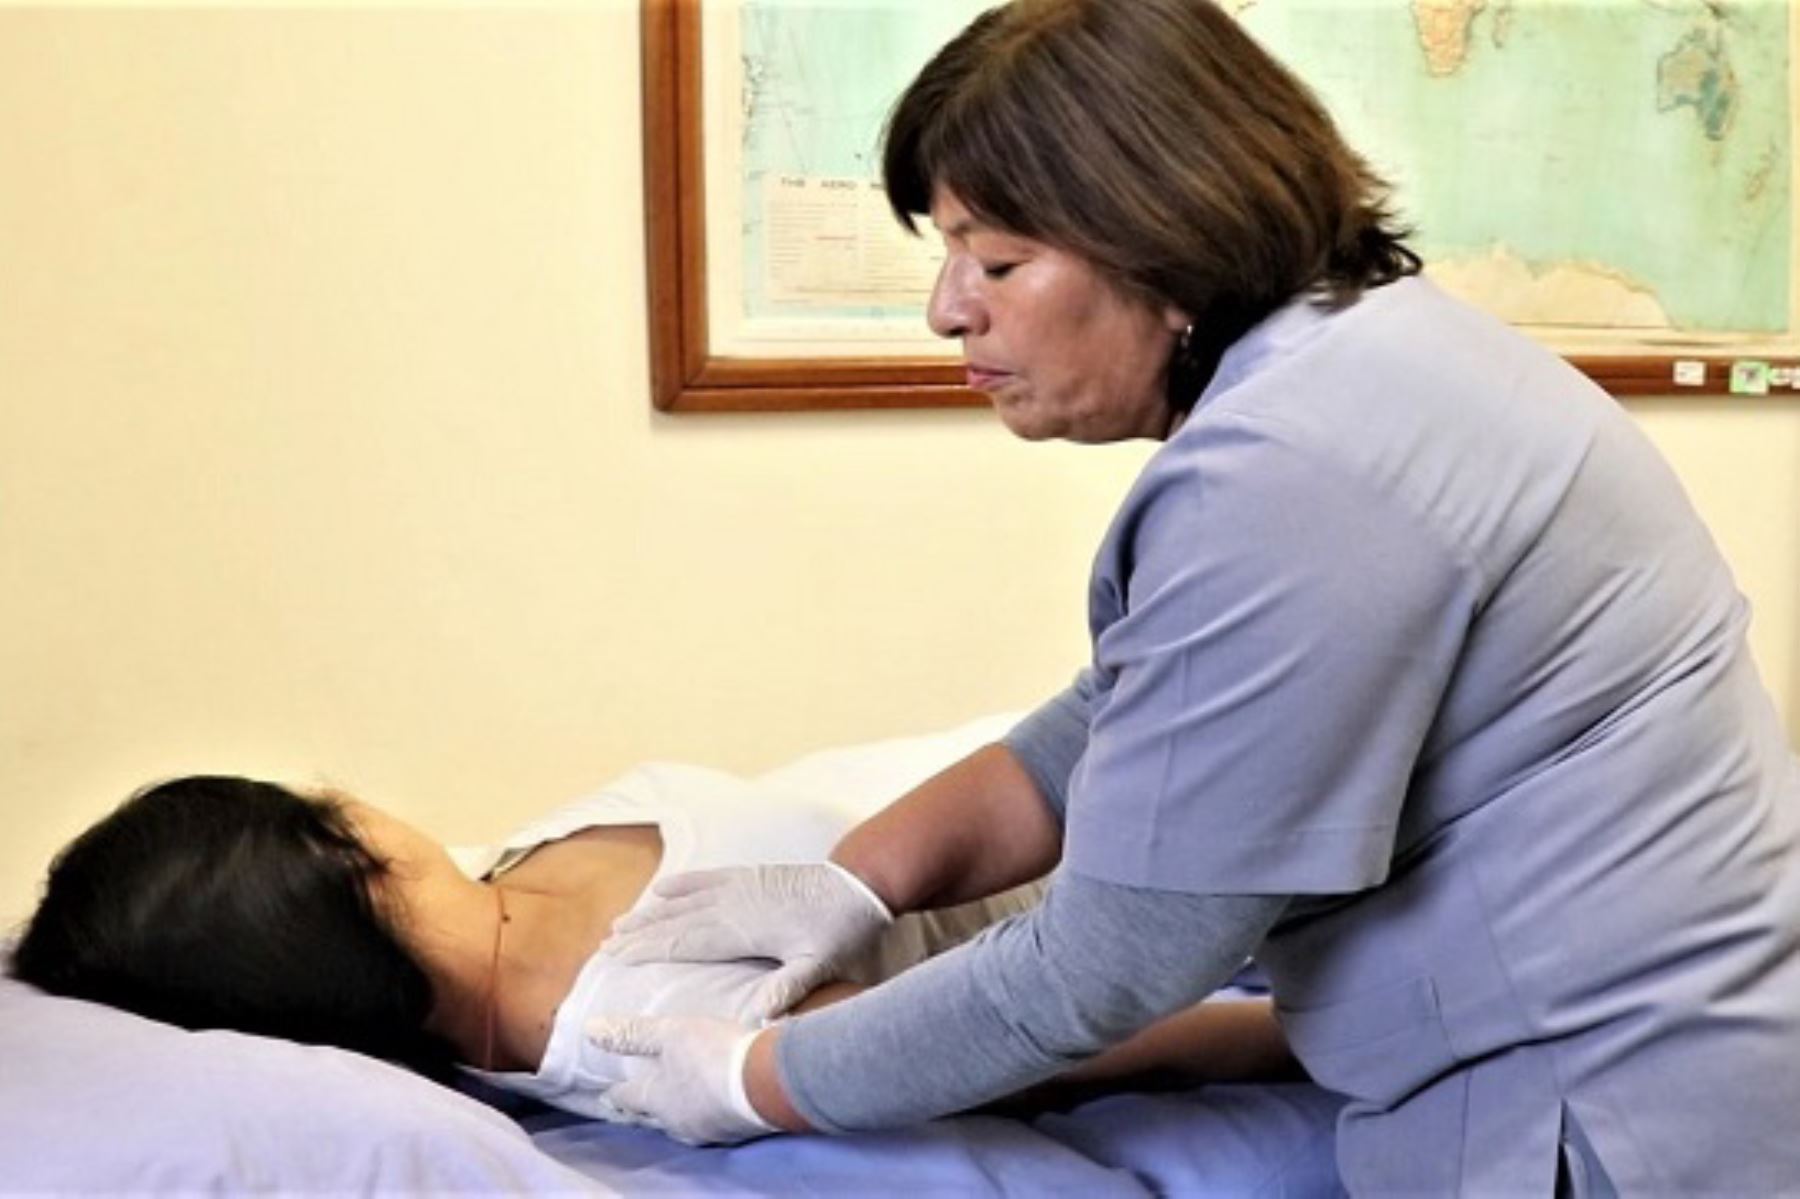 Ministerio de Salud destacó tratamiento brindado a pacientes afectados por el Síndrome de Guillain-Barré en el Instituto Nacional de Rehabilitación.